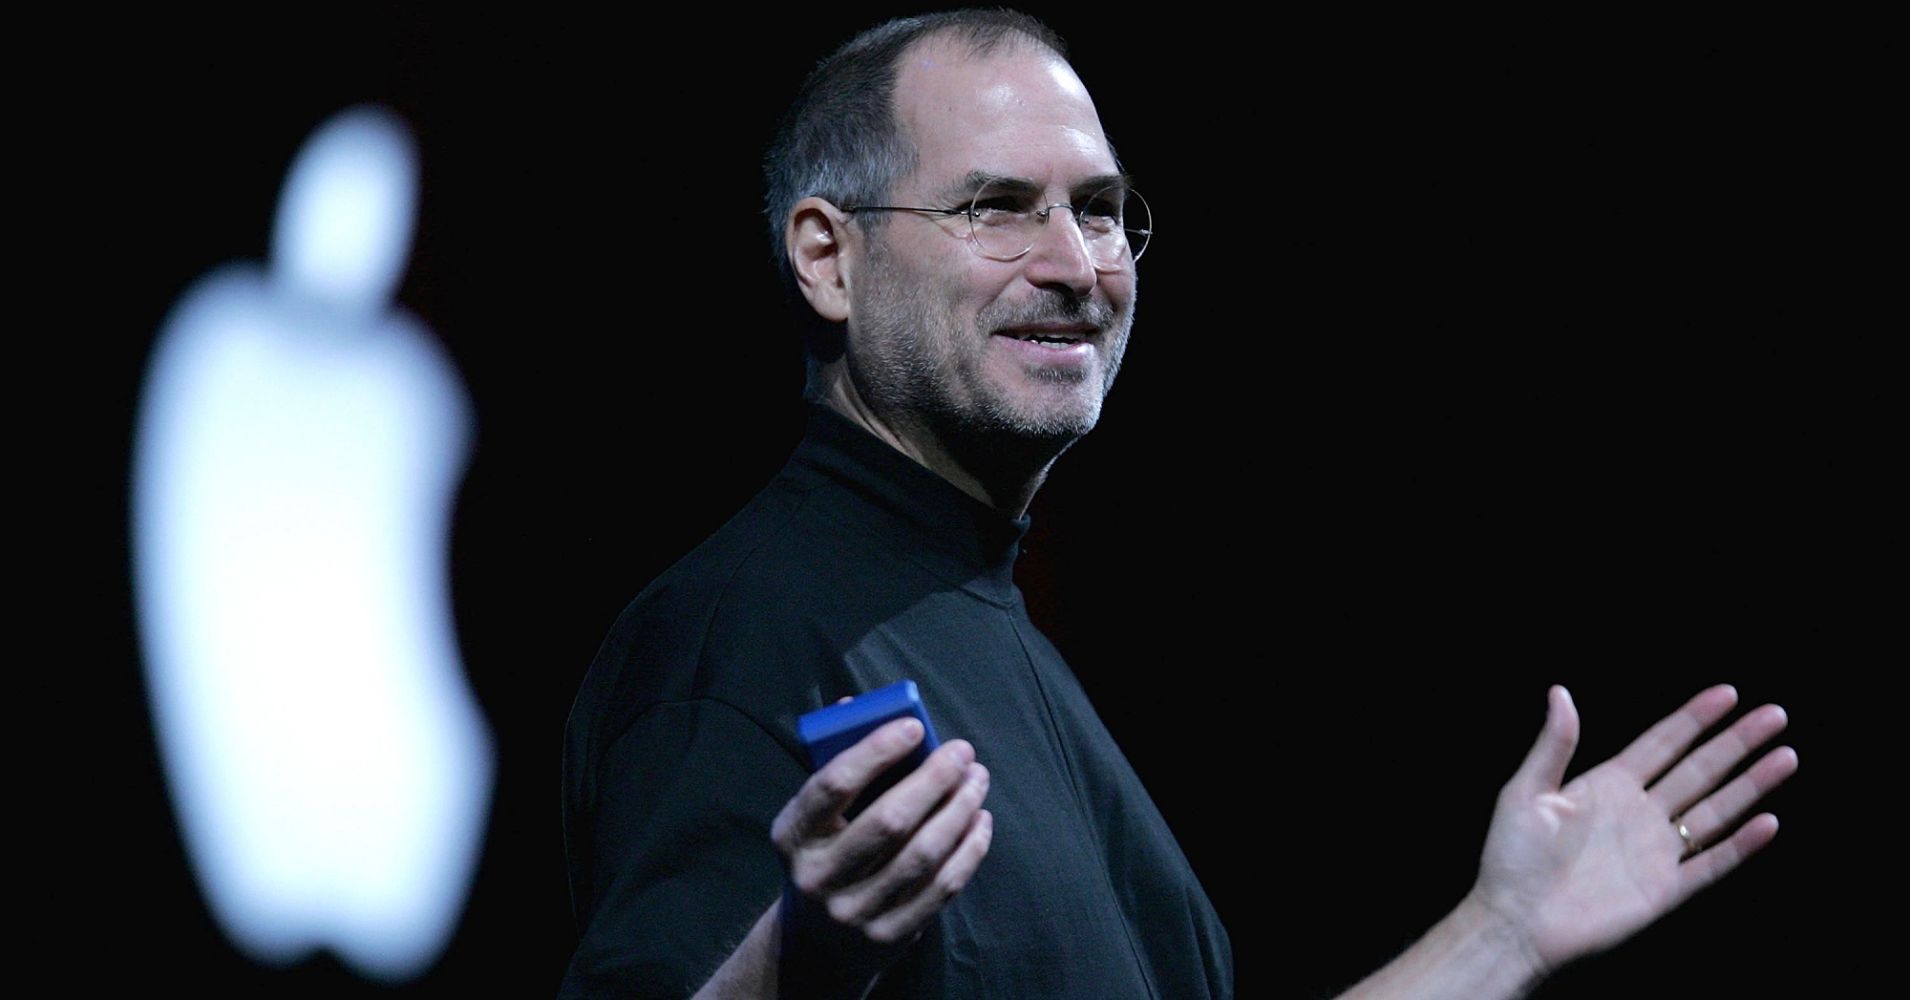 Steve Jobs'ın kartviziti açık artırmada rekor fiyata satıldı!